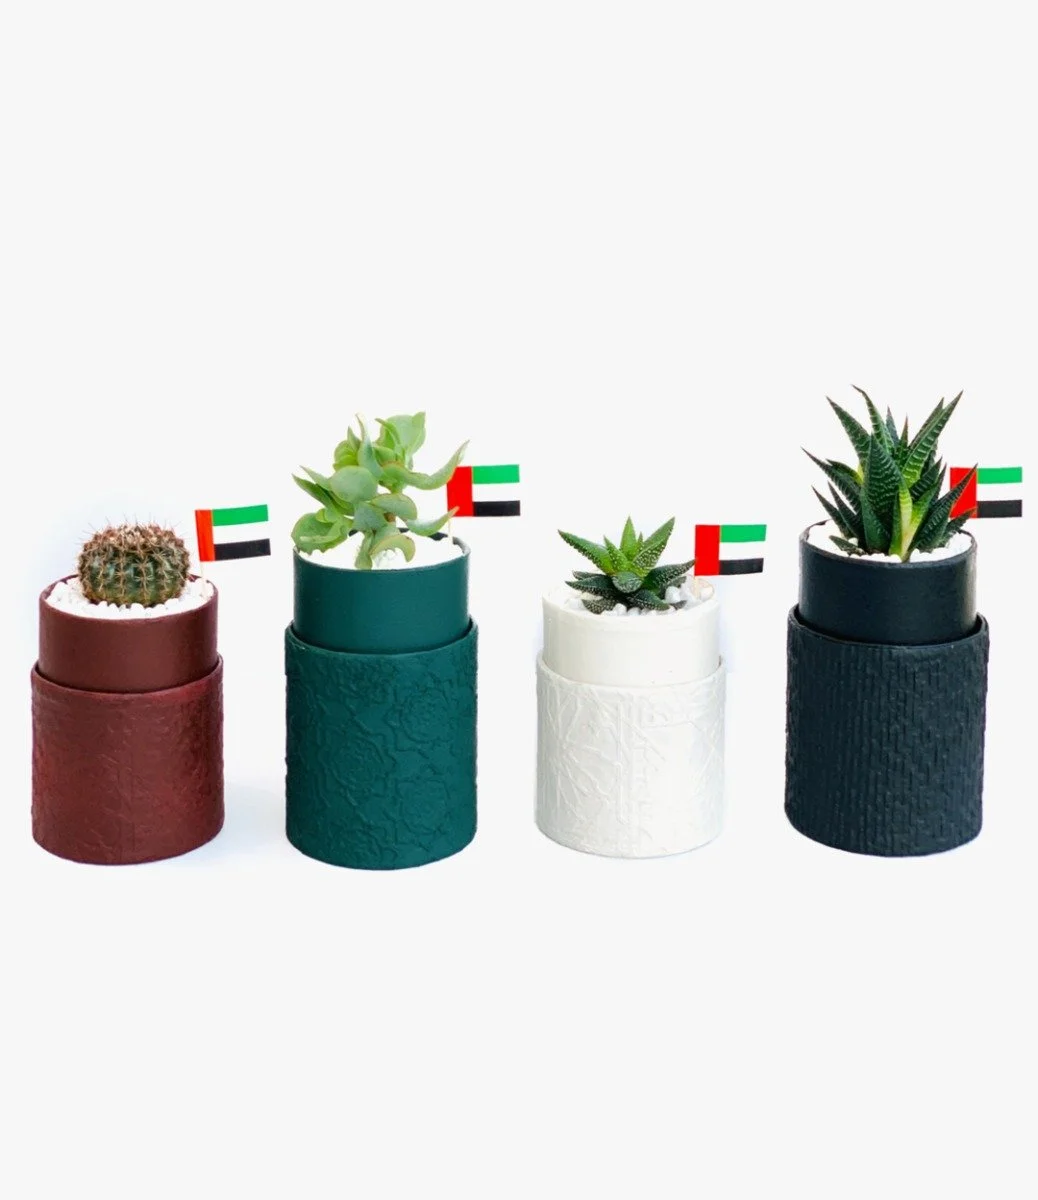  مجموعة من 4 قطع مزيج نبات عصاري صغير - اليوم الوطني الإماراتي من وندر بوت